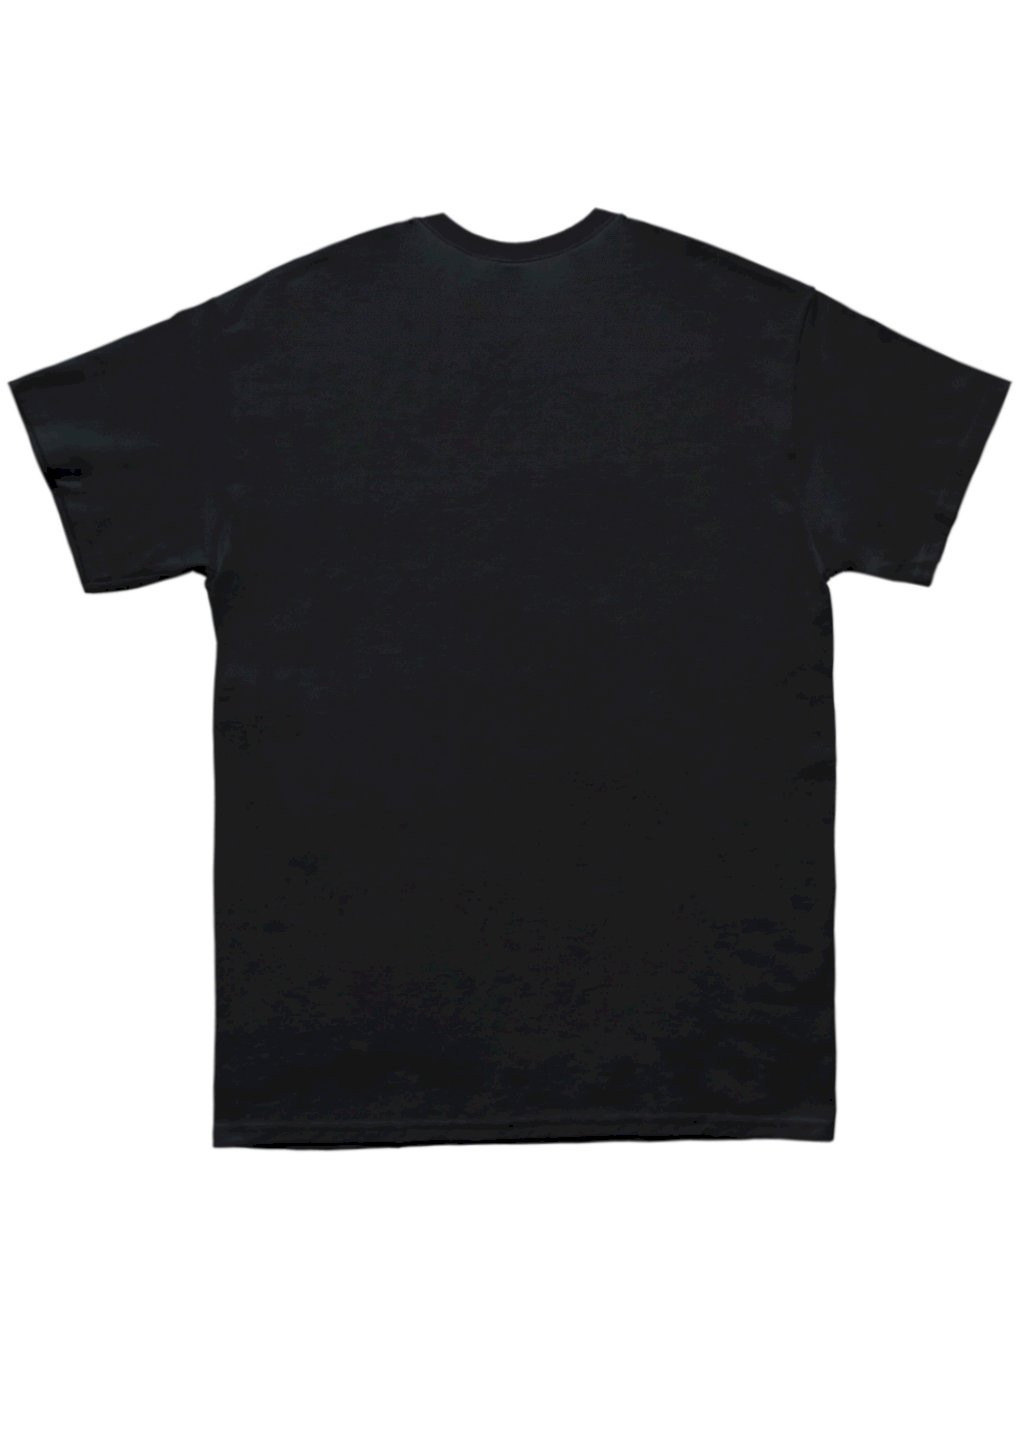 Черная футболка мужская черная "galaxies" Trace of Space